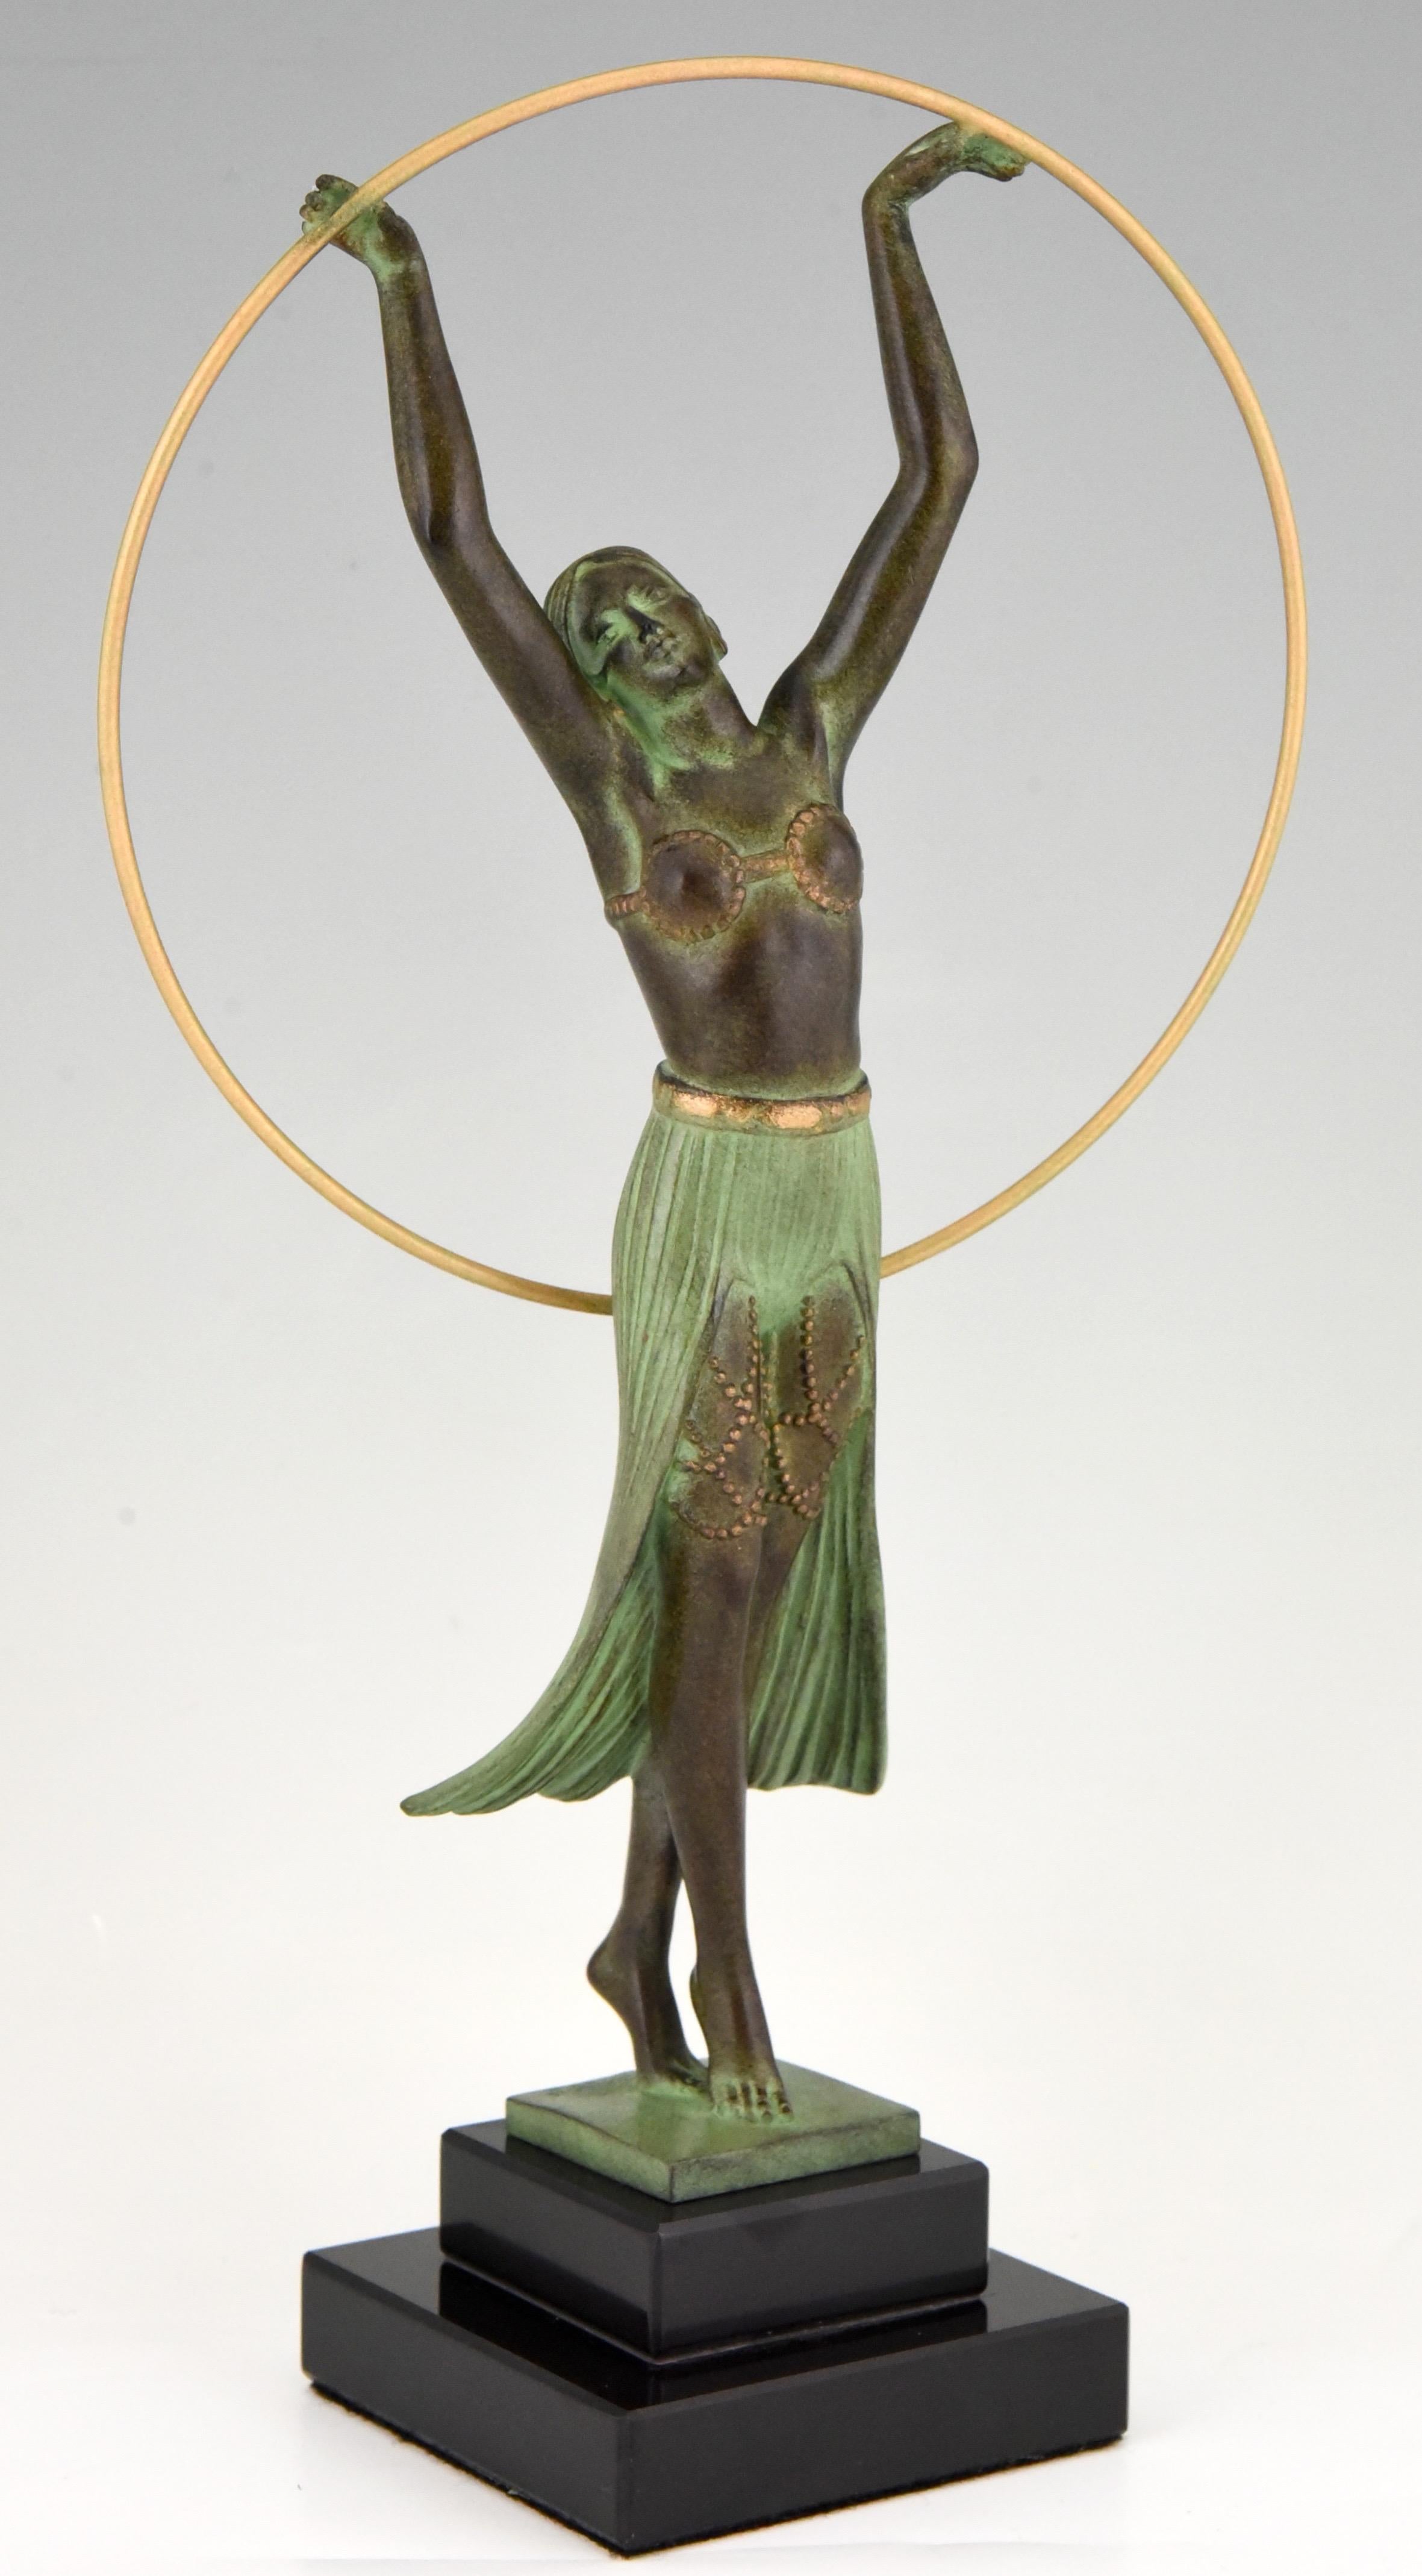 Elegante Skulptur einer Frau mit Reifen im Art Deco Style, signiert von dem französischen Künstler C. Charles, gegossen in der Gießerei Max Le Verrier.
Die Metallskulptur hat eine schöne grüne Patina und steht auf einem Sockel aus schwarzem Marmor,